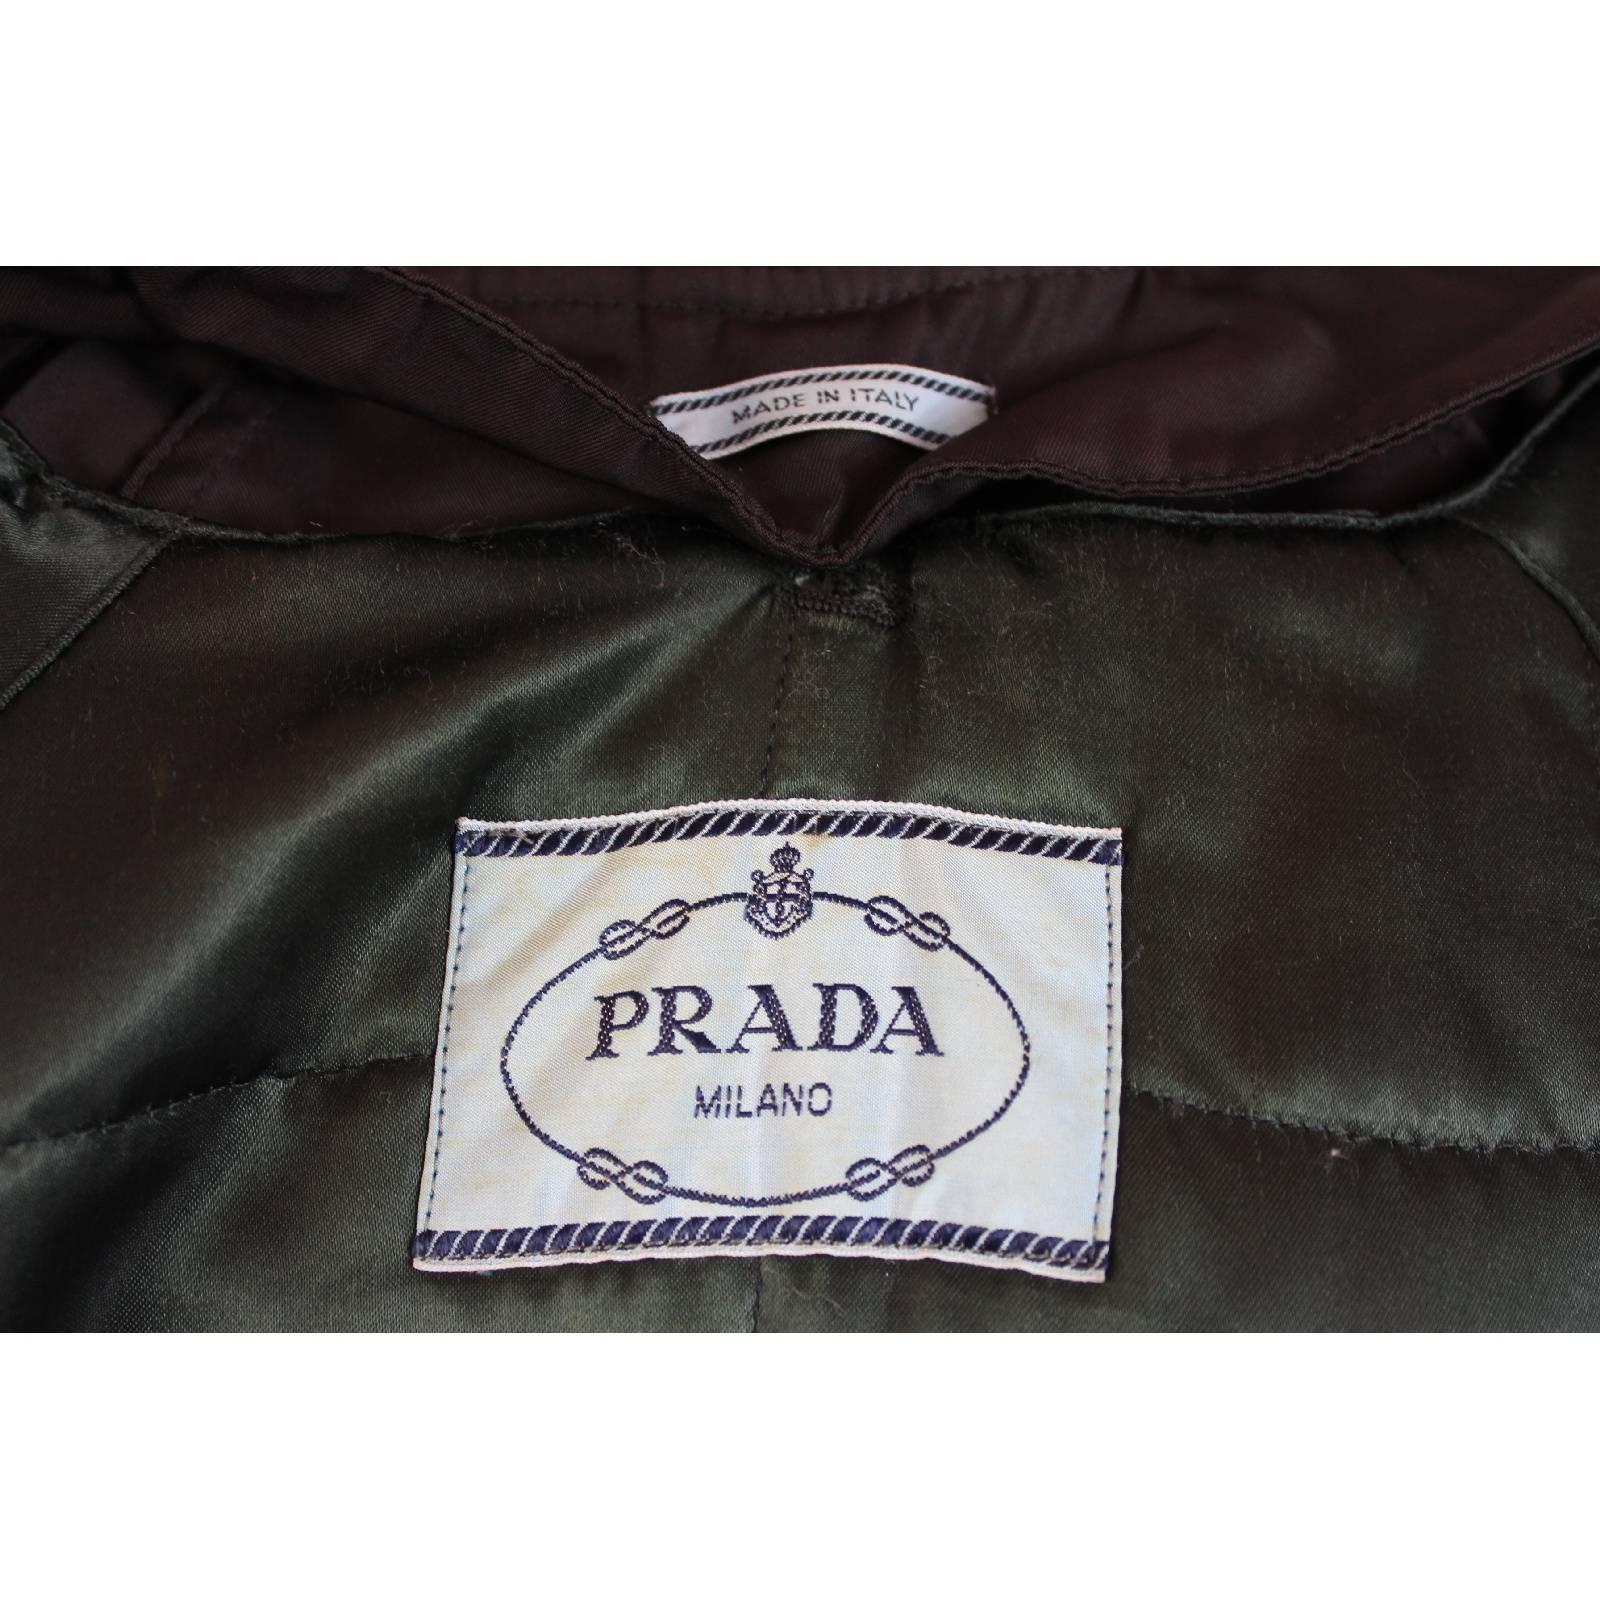 Women's 1990s Prada waterproof brown trench coat raincoat size S women’s  For Sale